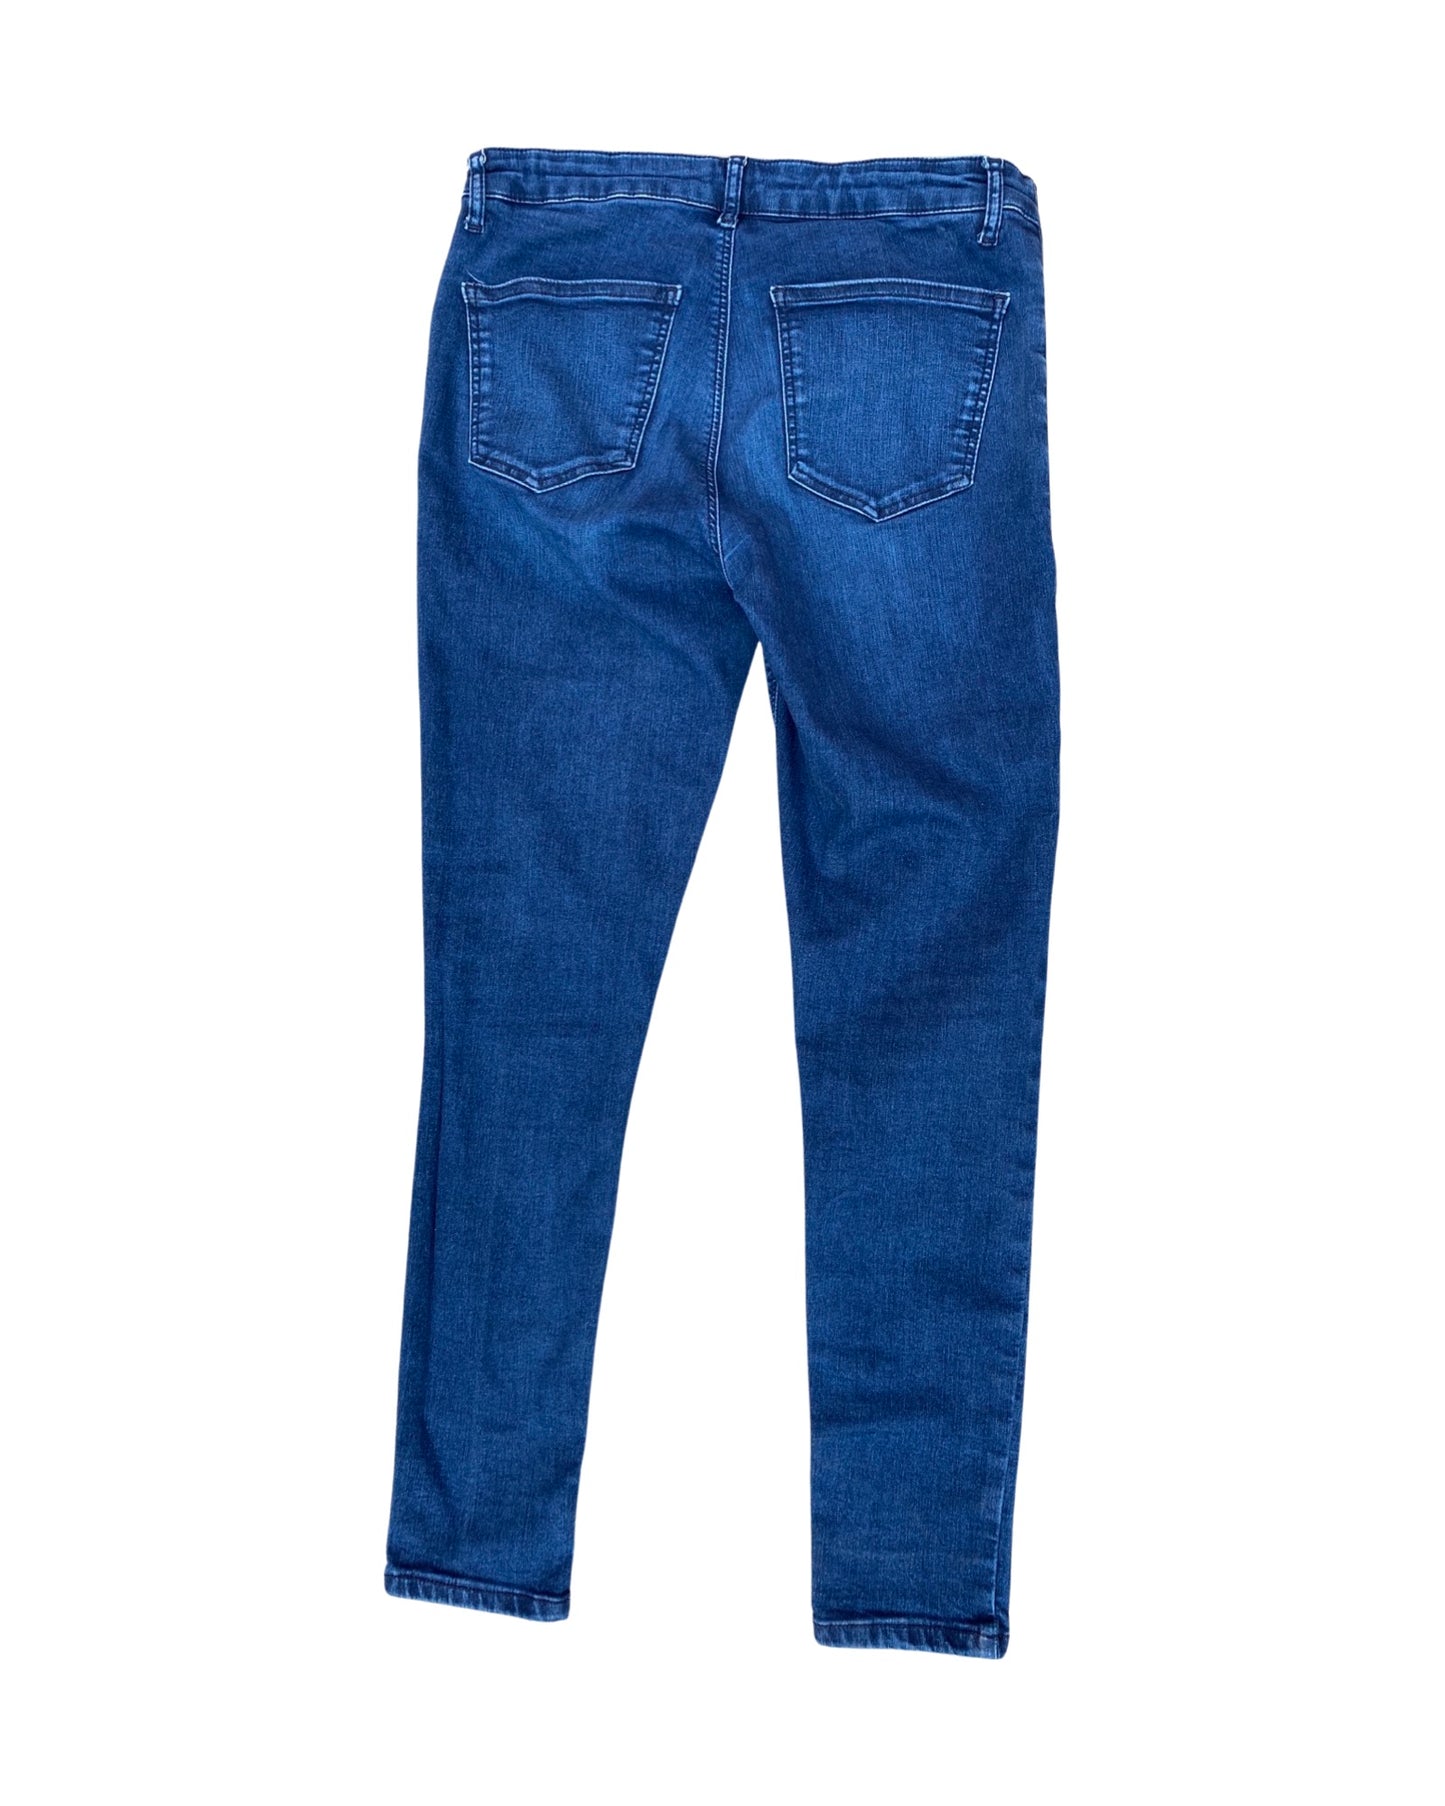 Topshop maternity Joni dark wash jeans (size 12 L32)